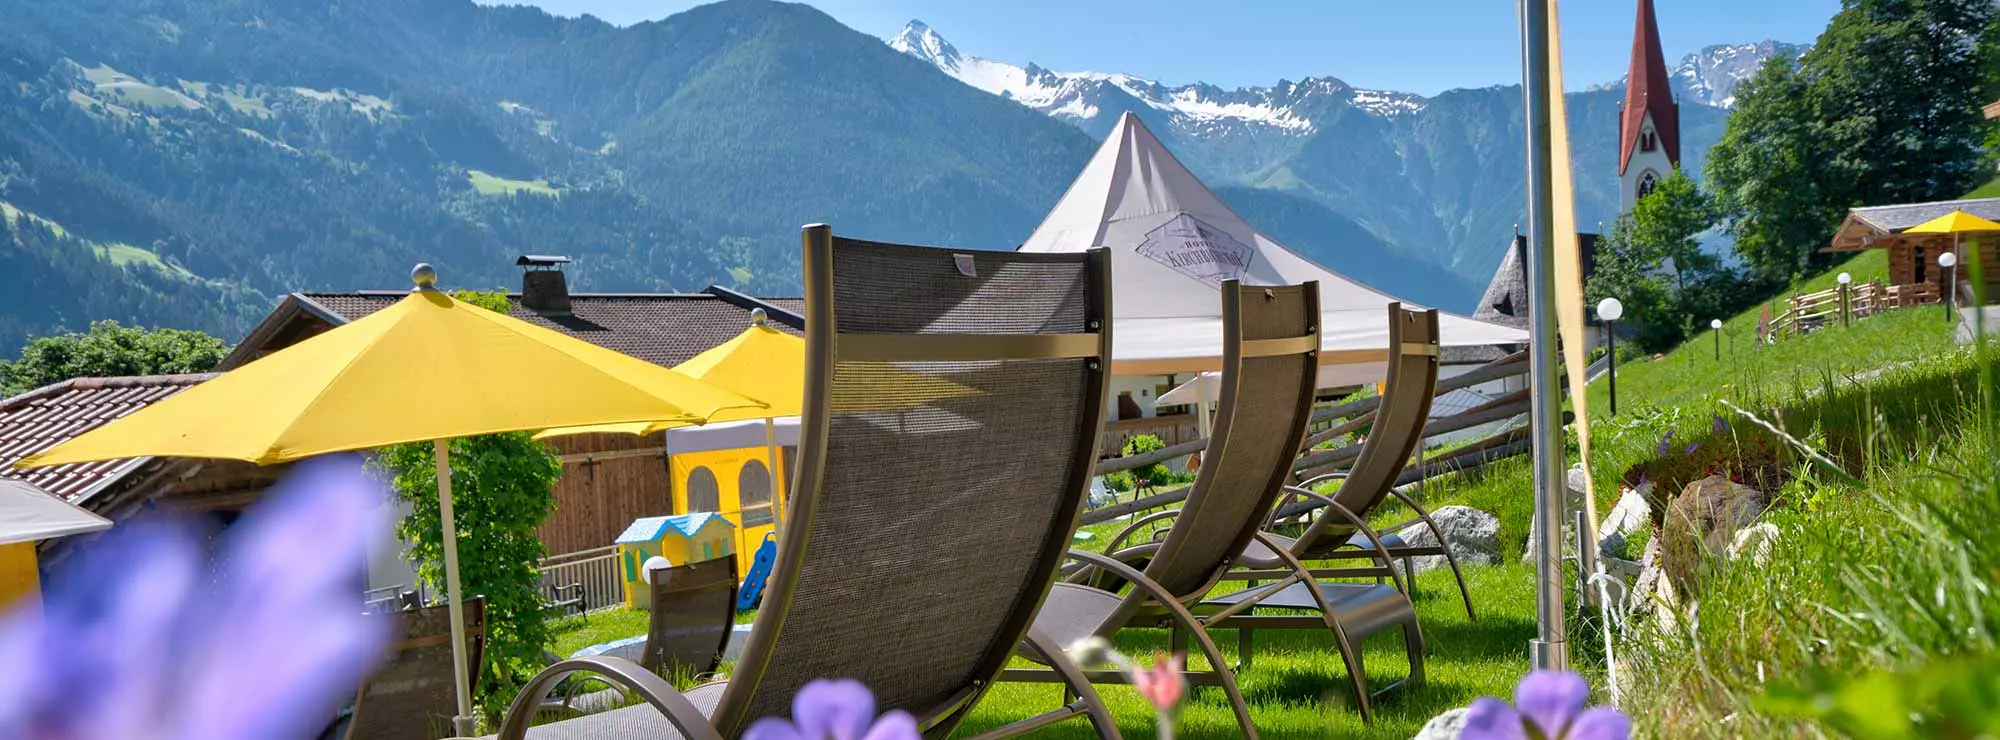 Liegestühle mit Sonnenschirmen in der Sonne im Garten im Hippach in den Bergen